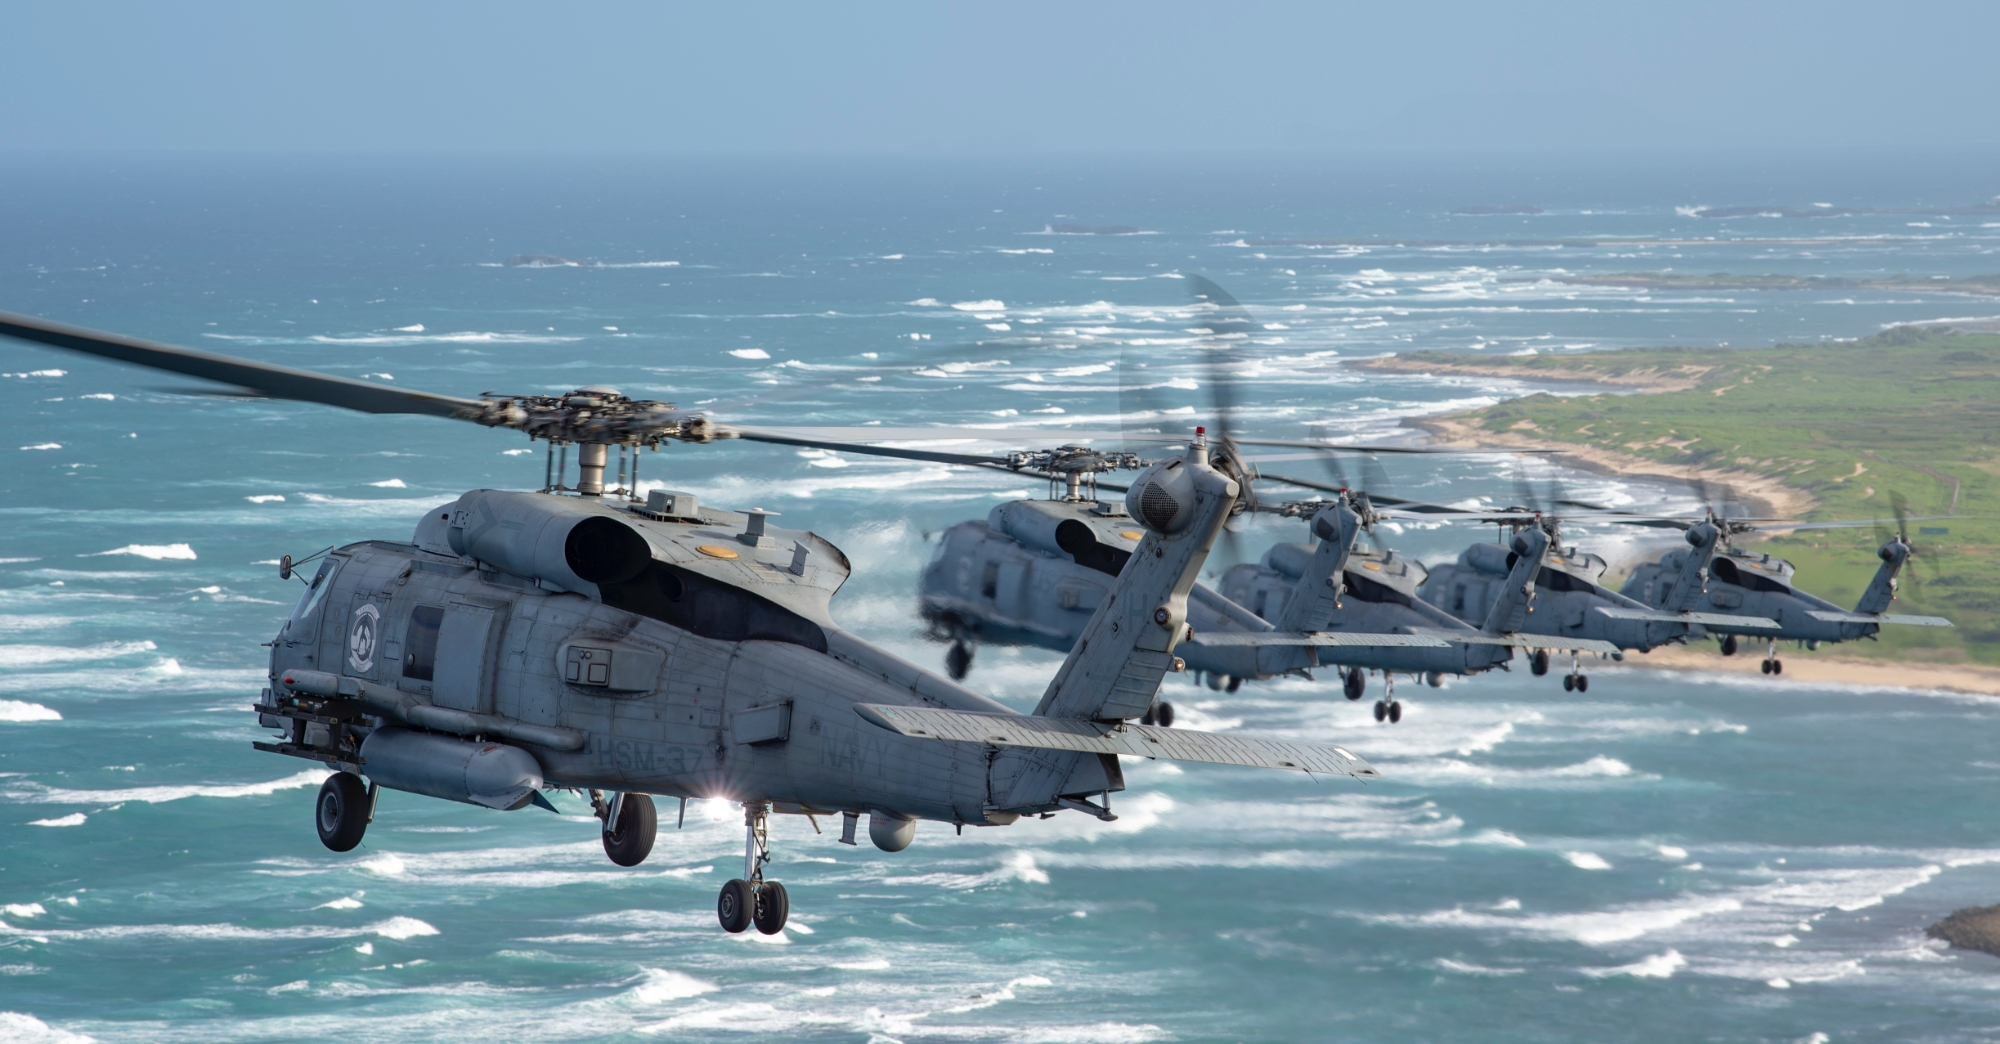 Kontrakt värt 380 miljoner USD: Spanien beställer 8 Sikorsky MH-60R Seahawk-helikoptrar från Lockheed Martin för att ersätta Sikorsky SH-3 Sea King-helikoptrar